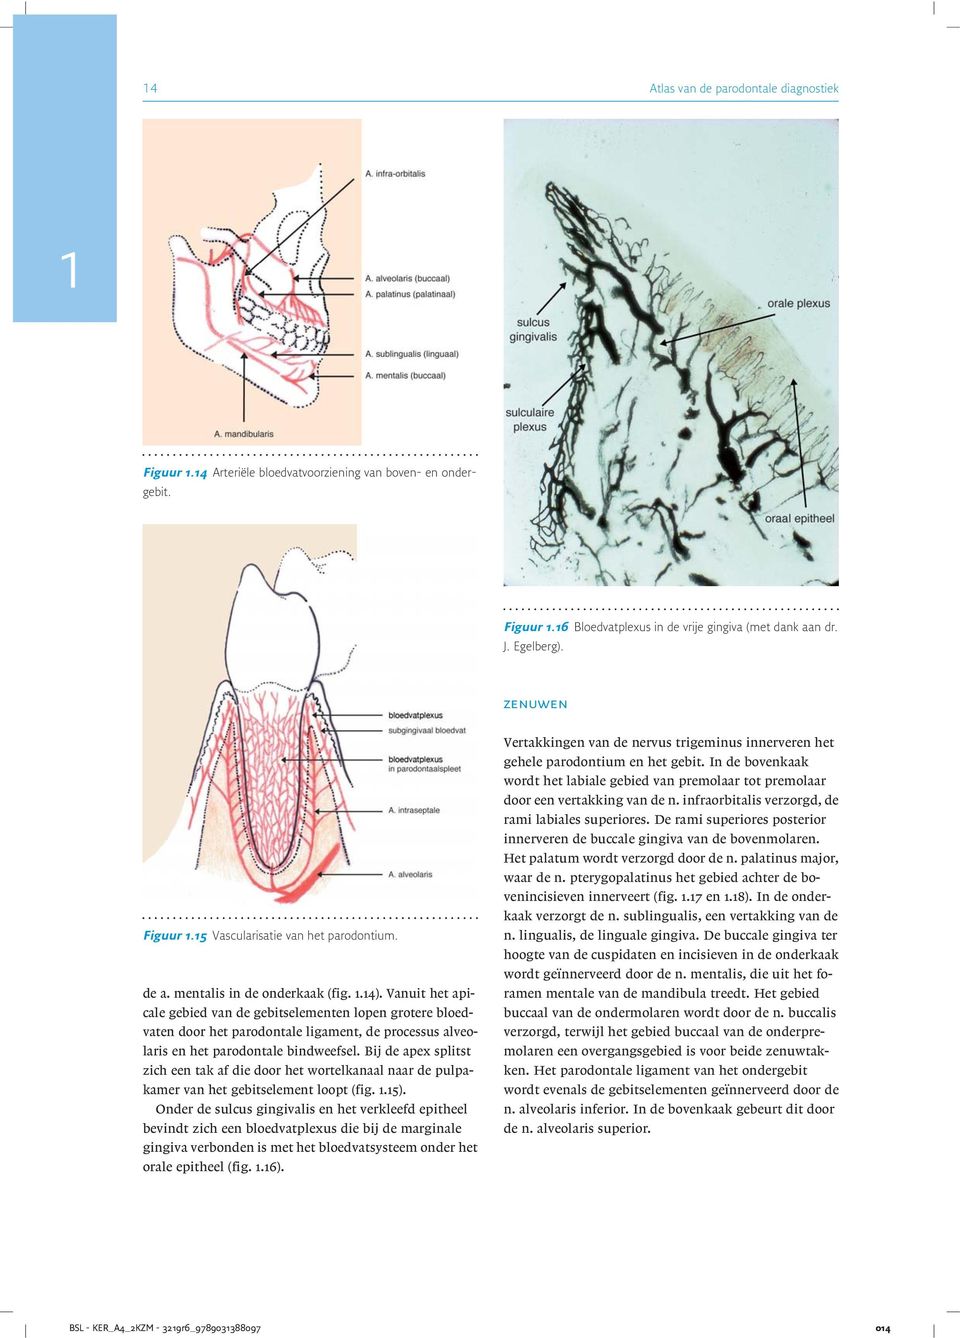 Vanuit het apicale gebied van de gebitselementen lopen grotere bloedvaten door het parodontale ligament, de processus alveolaris en het parodontale bindweefsel.